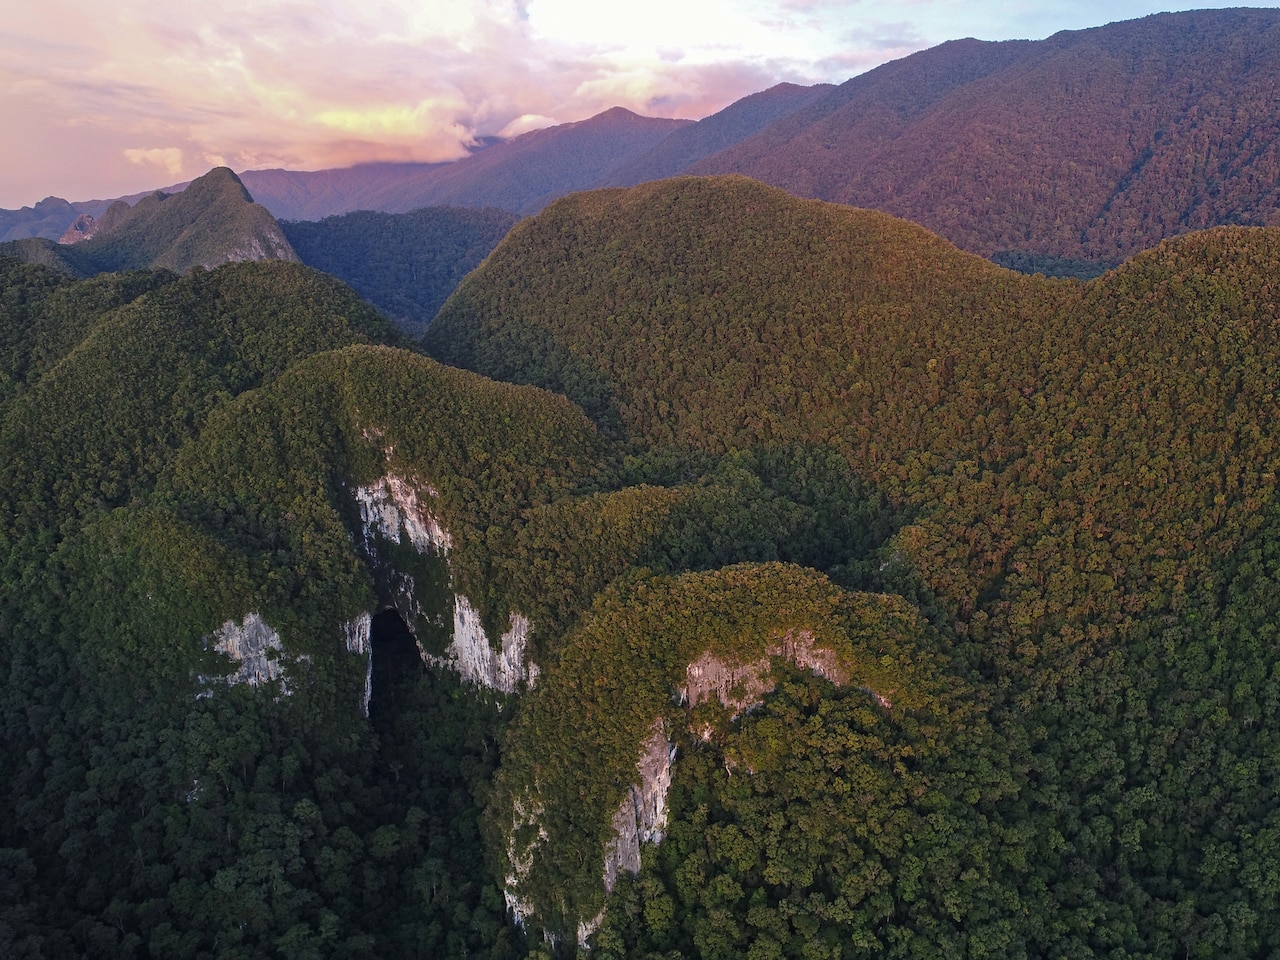 Vườn Quốc gia Gunung Mulu tại bang Sarawak, Malaysia trên quần đảo Borneo là di sản thế giới được UNESCO công nhận. Bên dưới thảm xanh rừng mưa rậm rạp, các núi đá vôi chứa trong mình nhiều hệ thống hang động rộng nhất hành tinh.